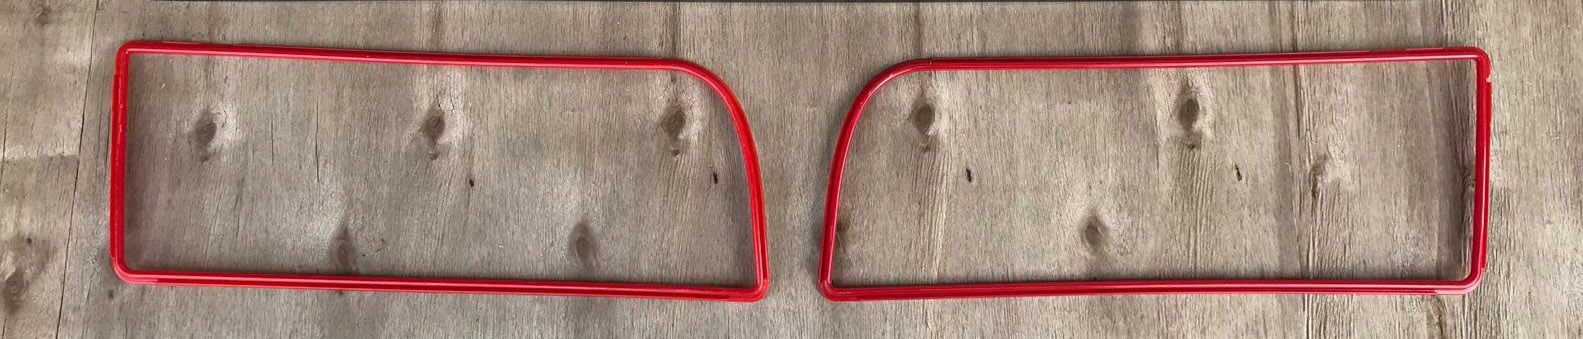 CARROZZERIA cornici profilo rosso mascherina delta integrali